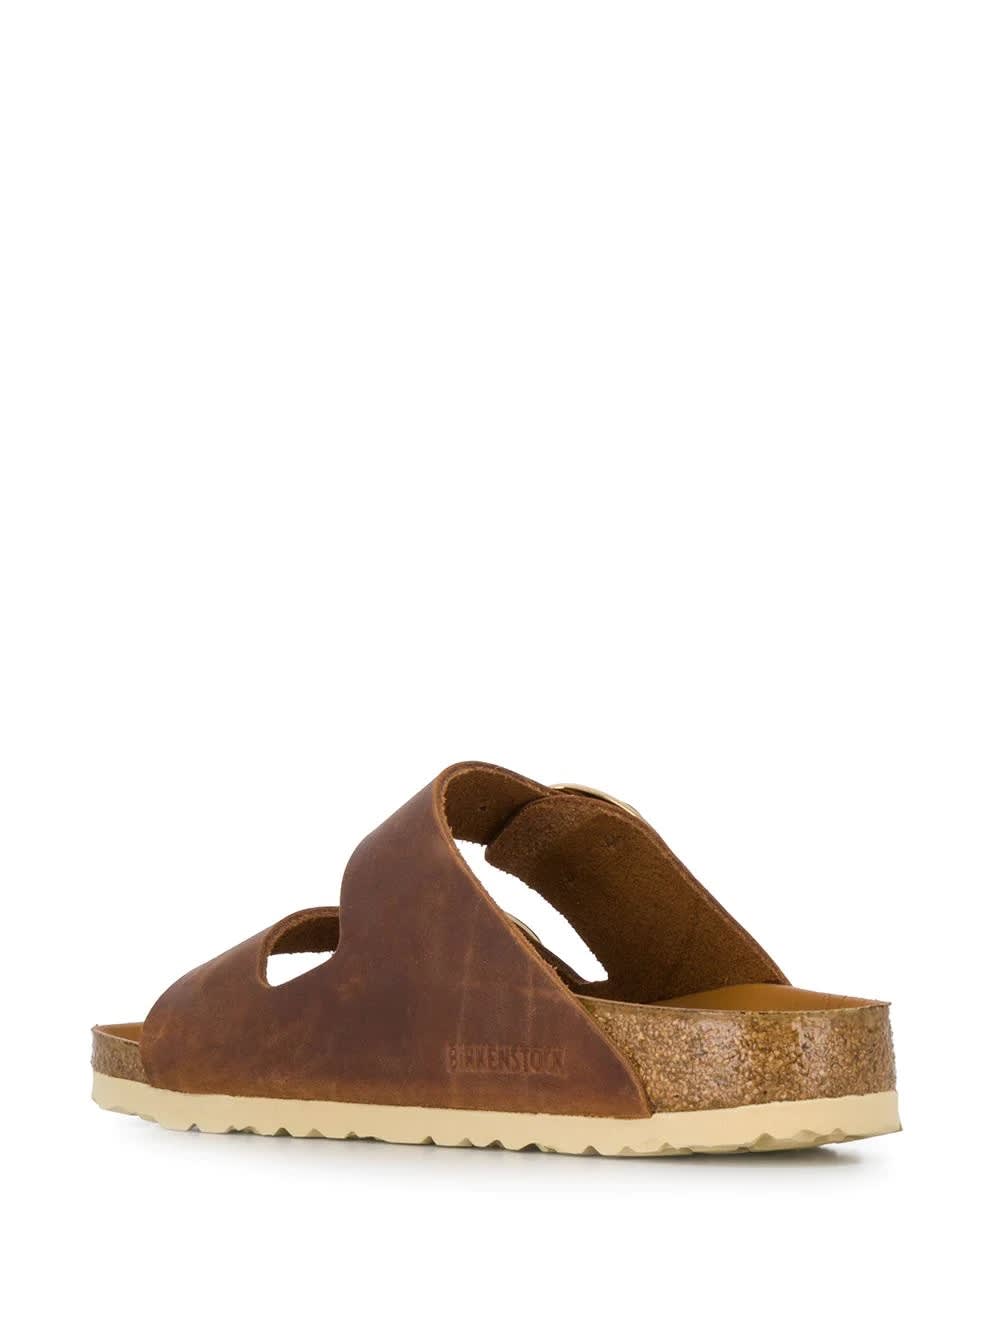 Birkenstock Arizona Big Buckle Leather Sandals In Brown | ModeSens